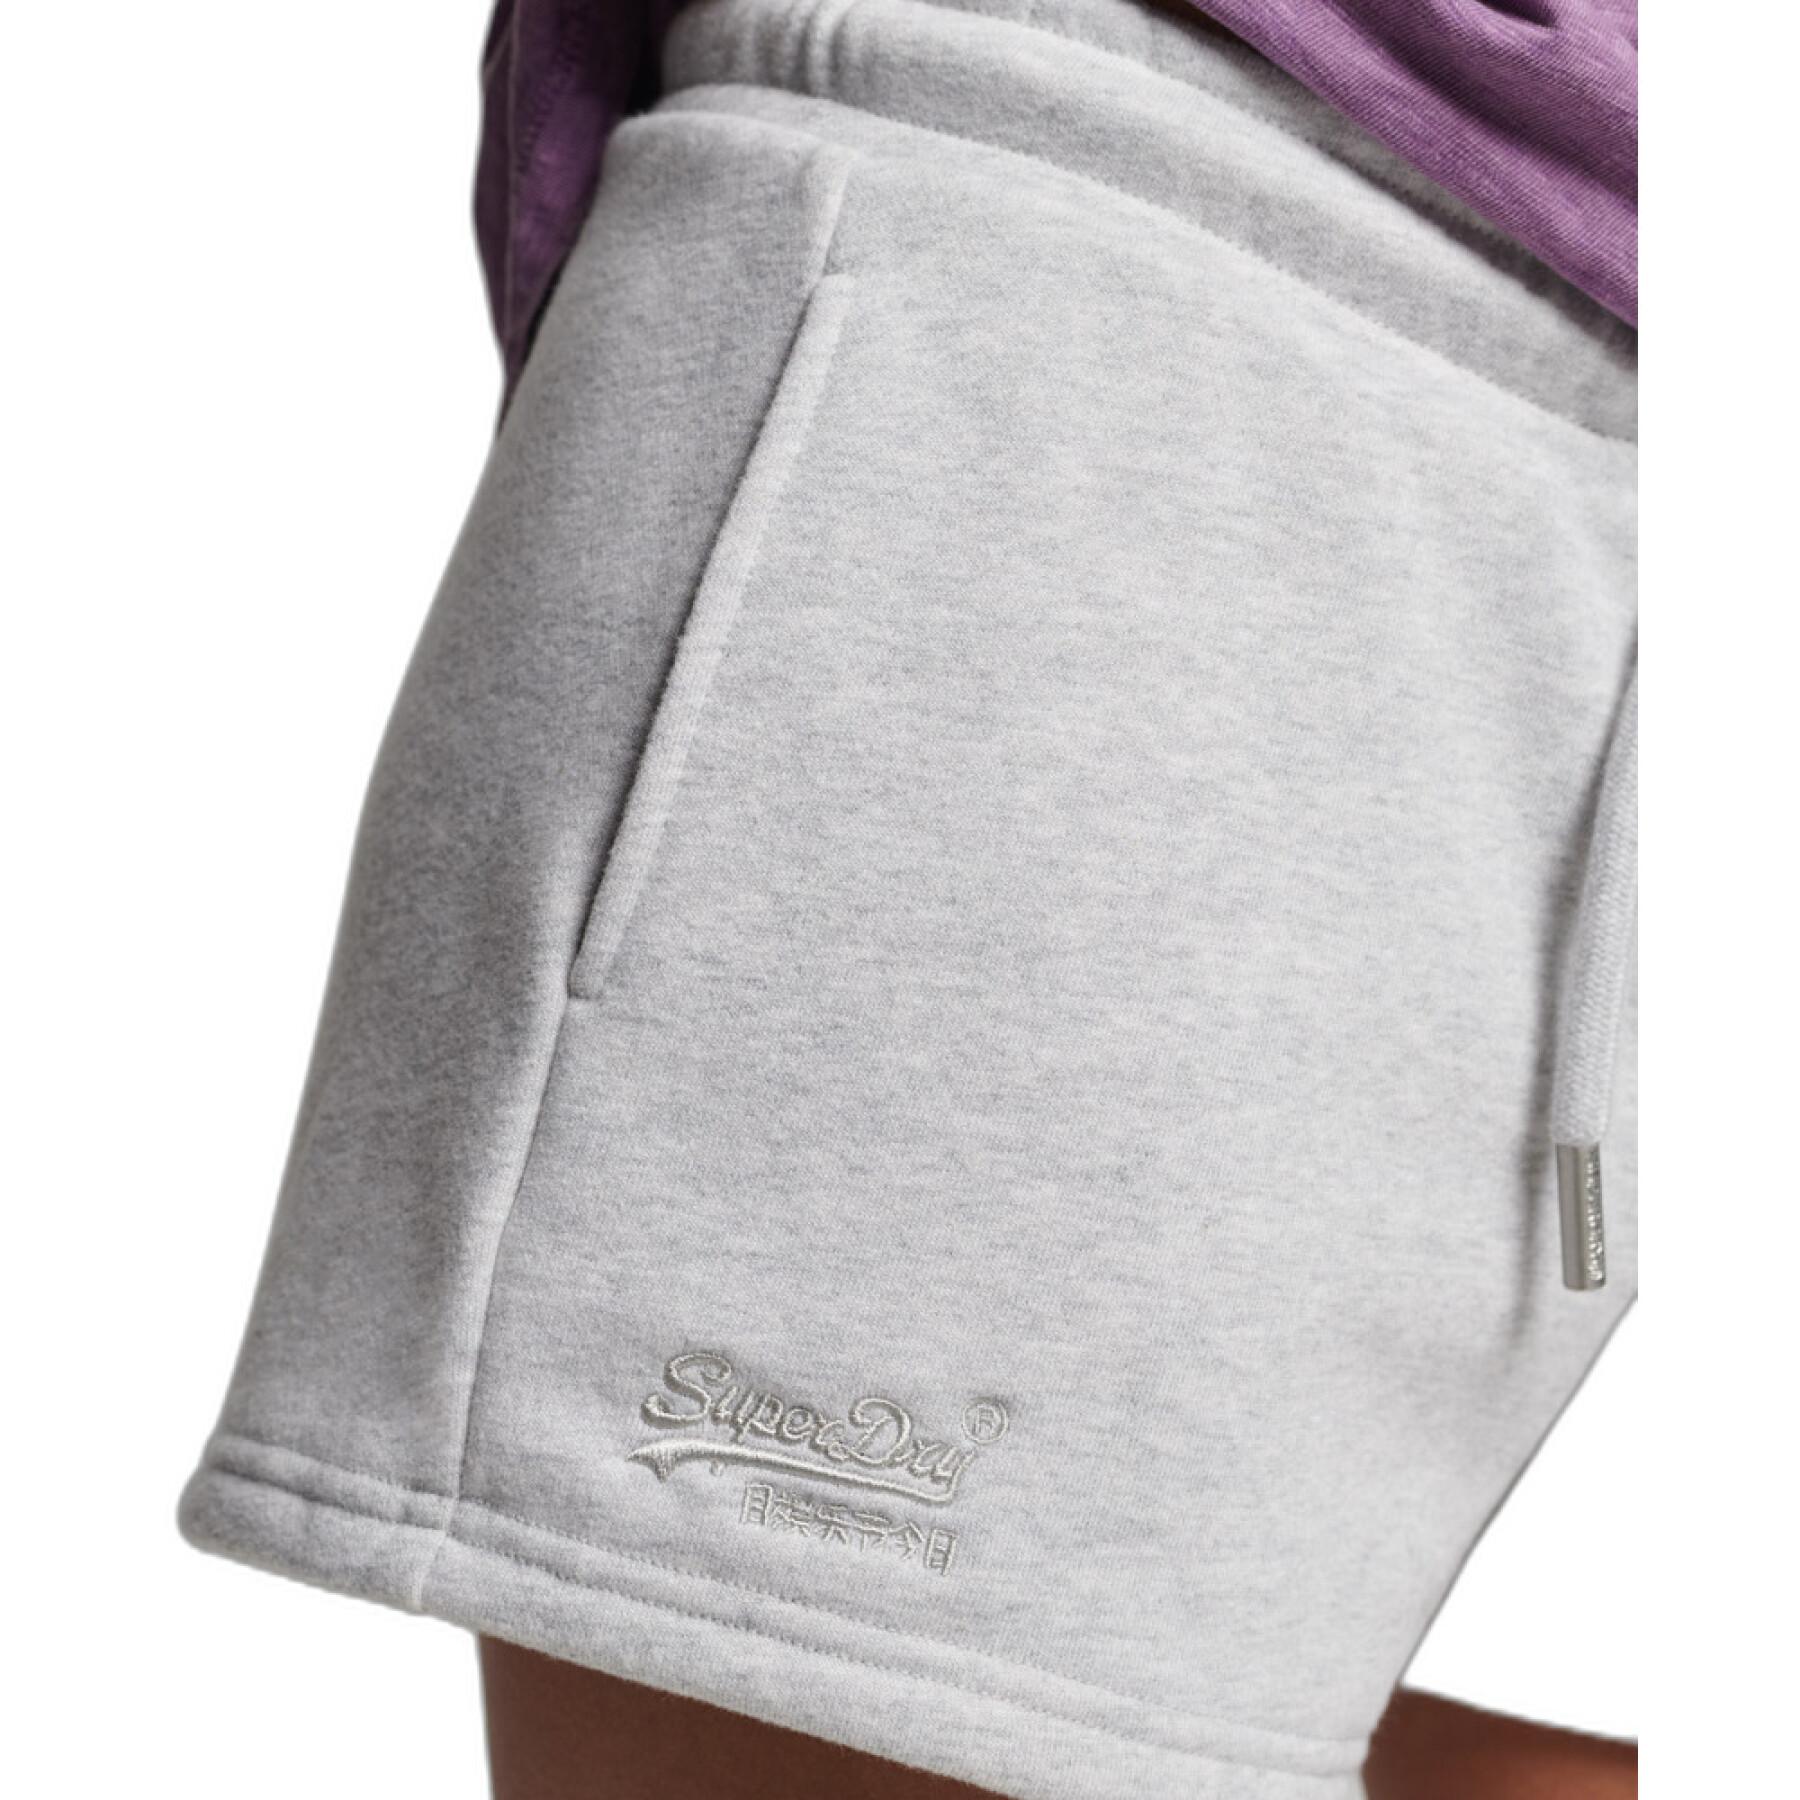 Pantalón corto de algodón orgánico y jersey para mujeres Superdry Vintage Logo